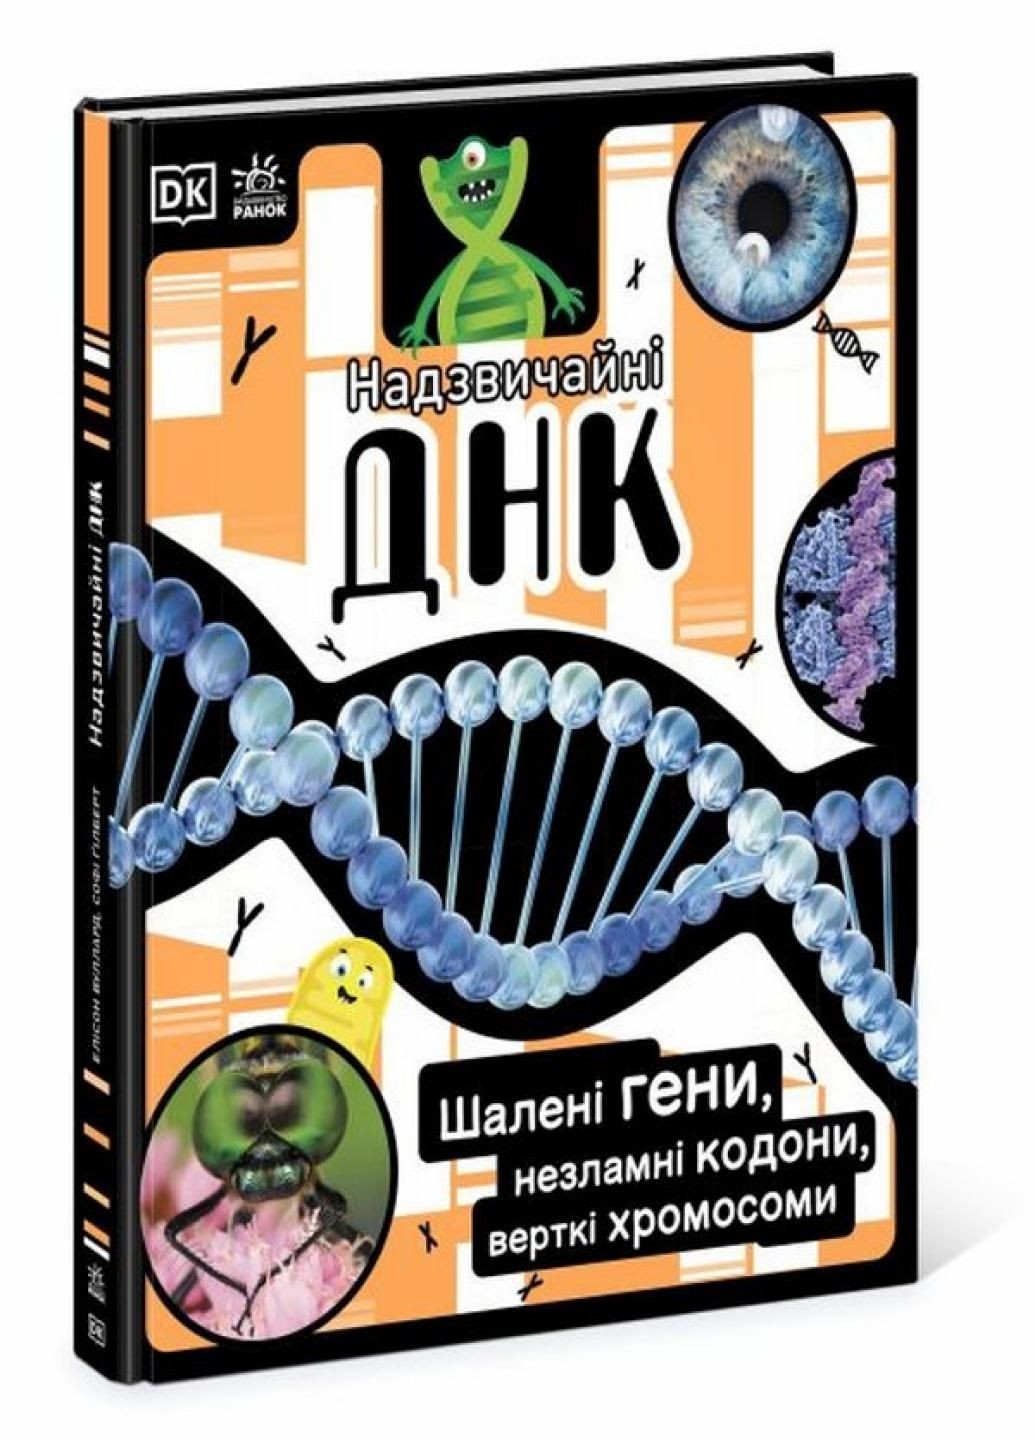 Книга Надзвичайні ДНК. Шалені гени, незламні кодони, верткі хромосоми НШ. НЕ1434022У 9780241618226 РАНОК (292549989)